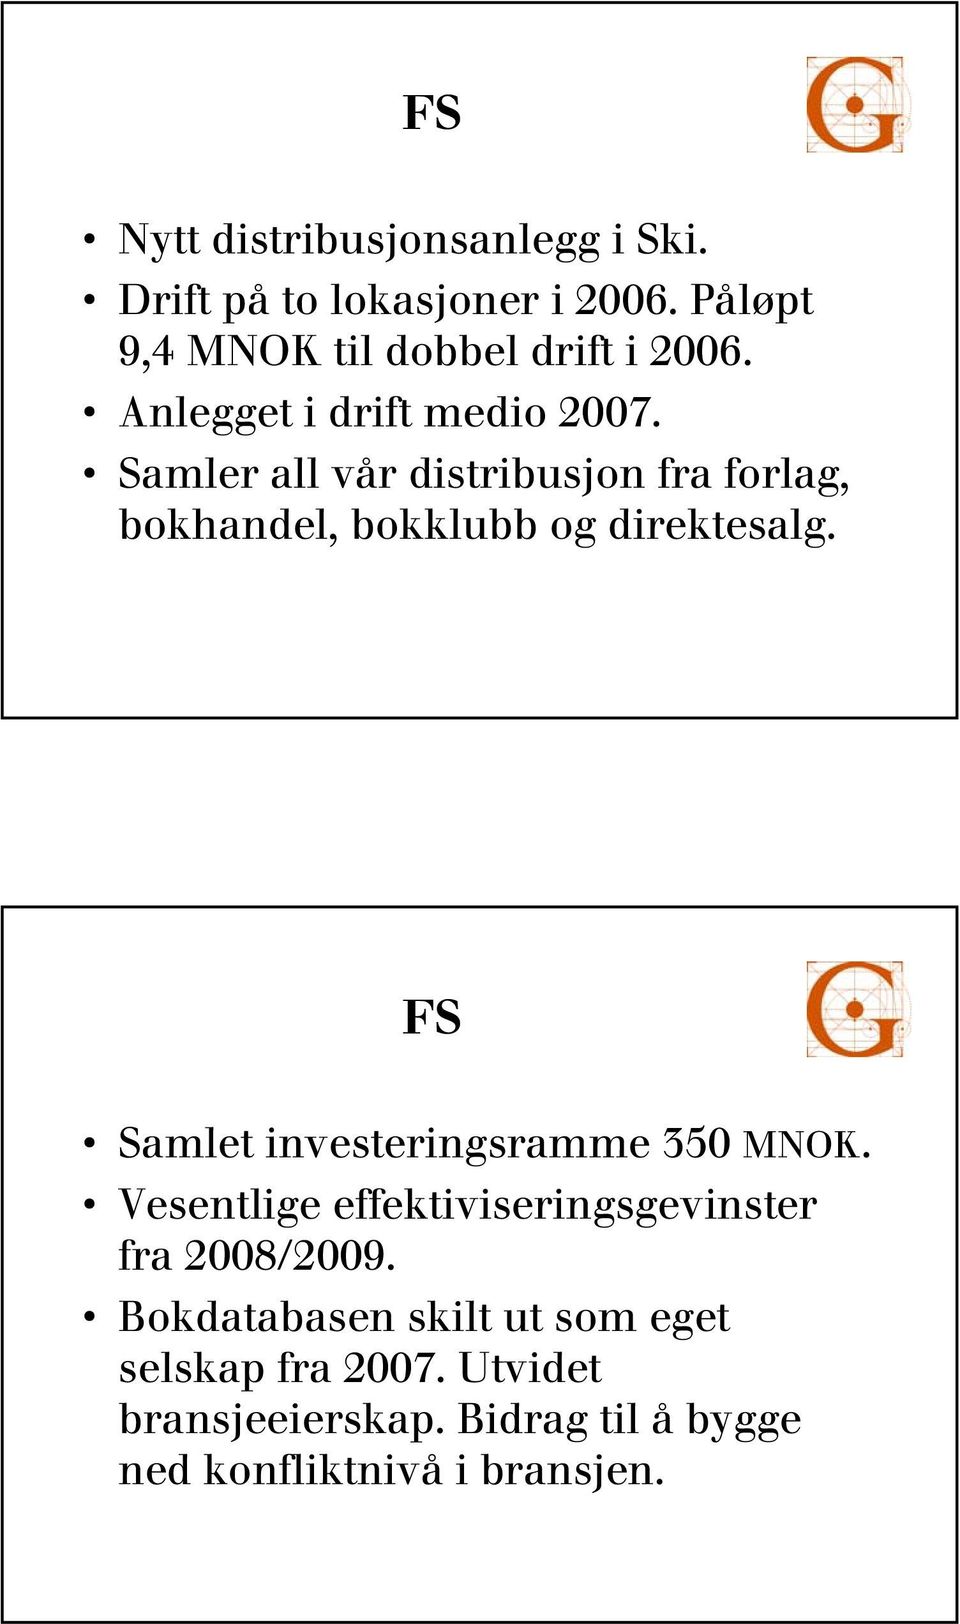 FS Samlet investeringsramme 350 MNOK. Vesentlige effektiviseringsgevinster fra 2008/2009.